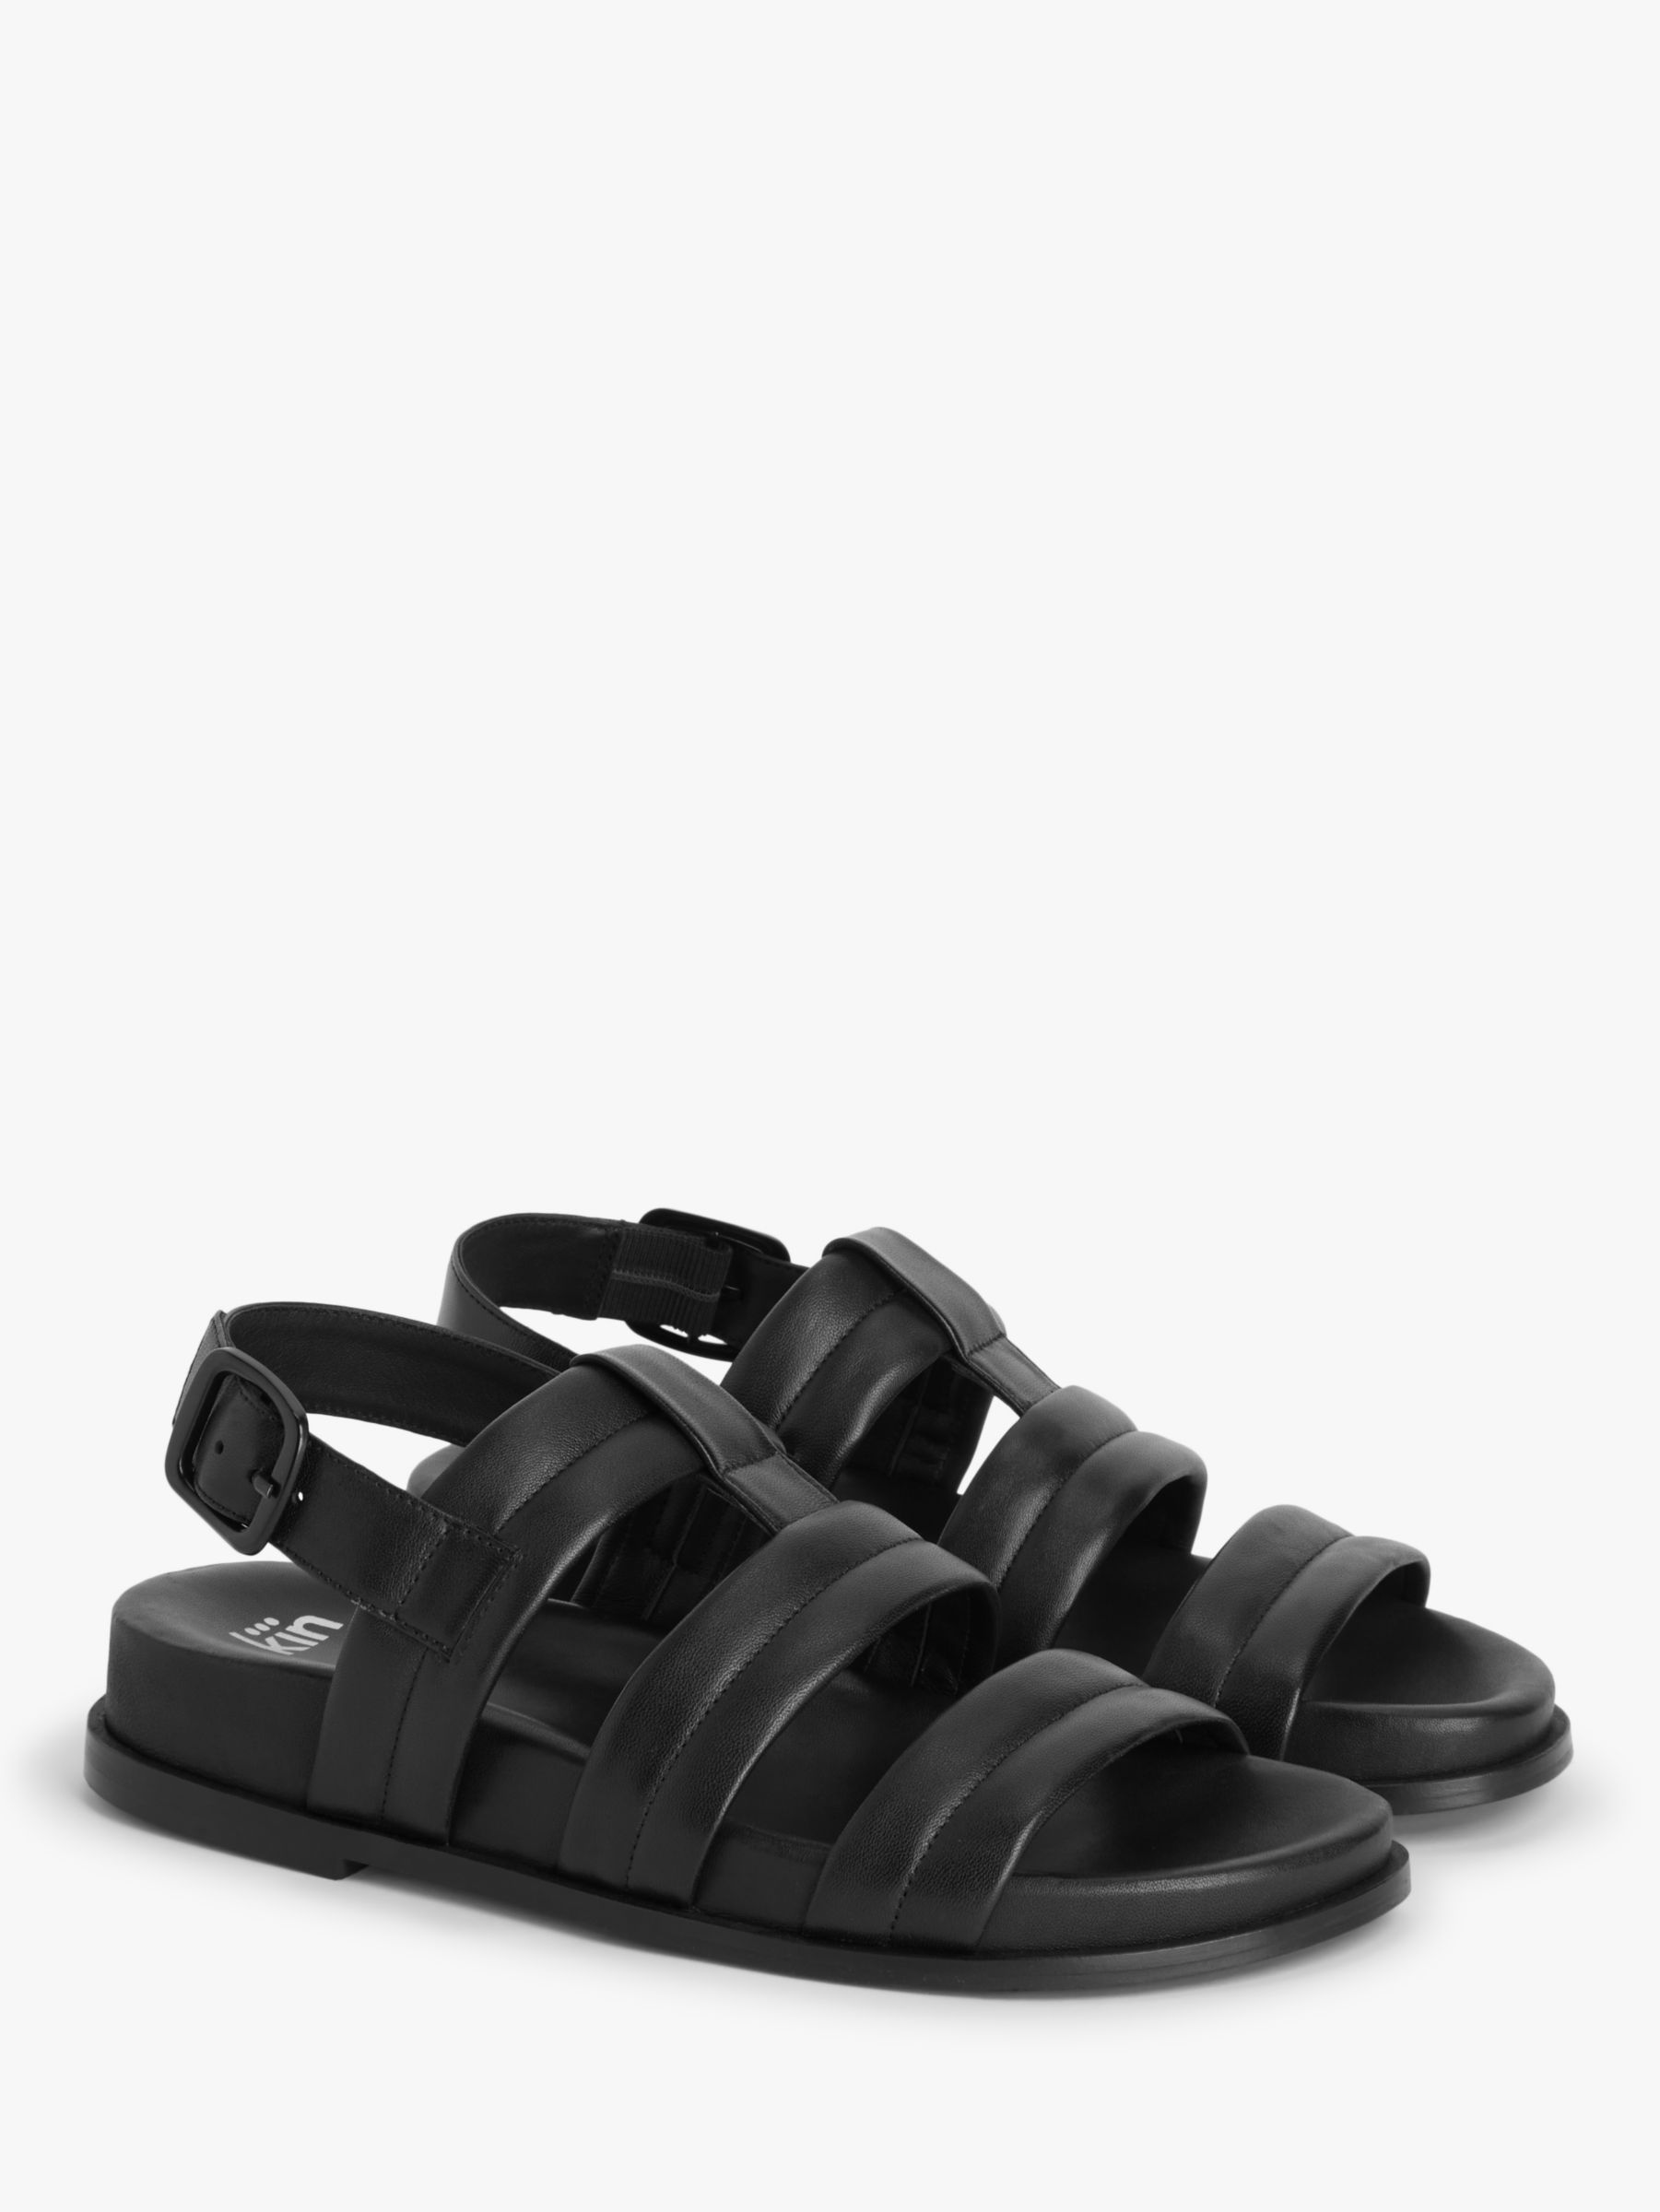 Kin Love Leather Footbed Sandals, Black, 3